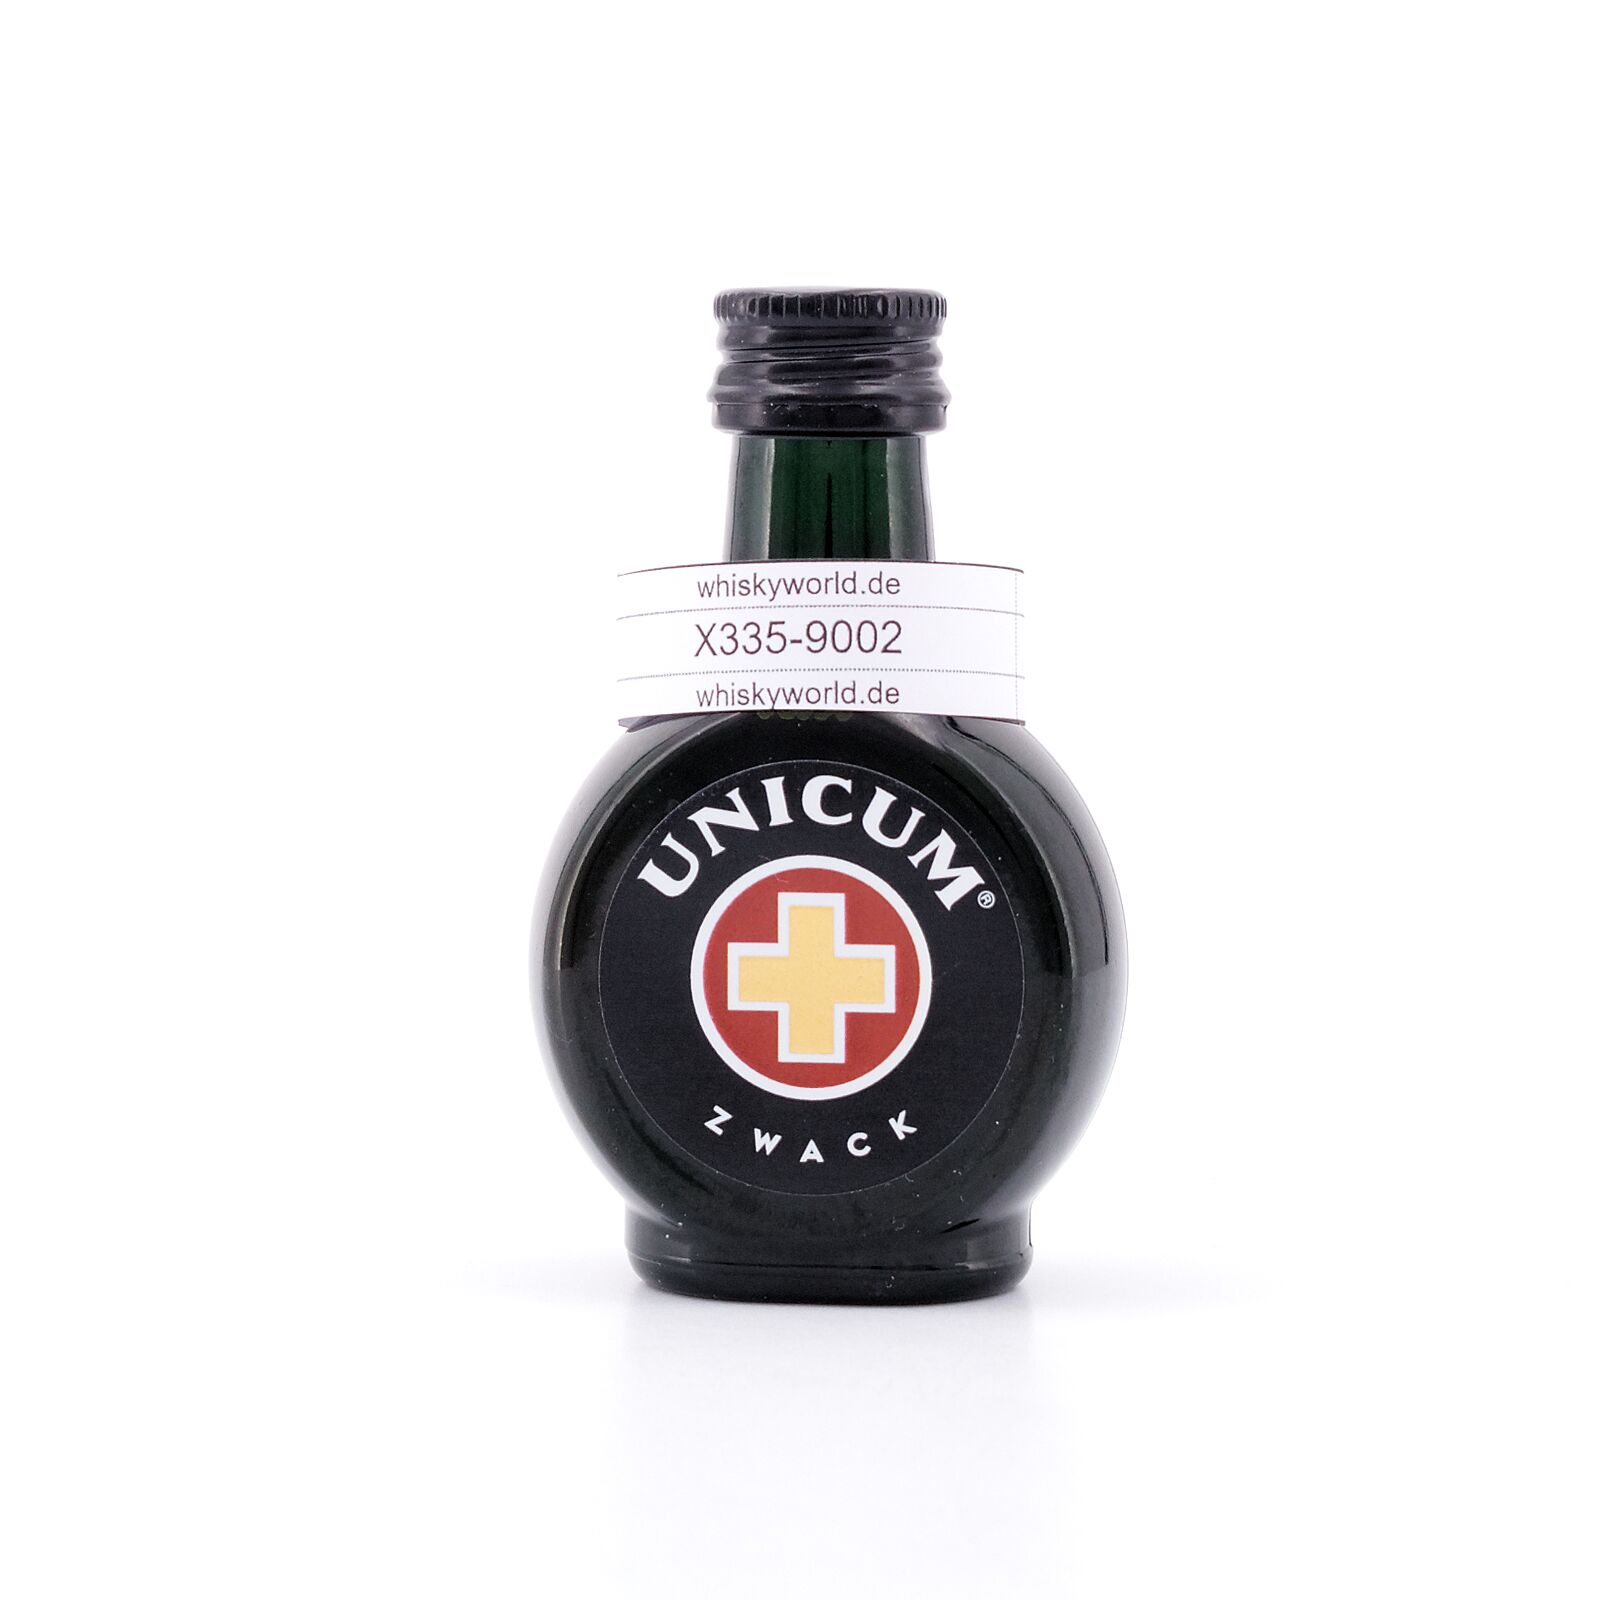 Unicum 0,040 40.0% Liter/ vol Zwack Miniatur Kräuterlikör